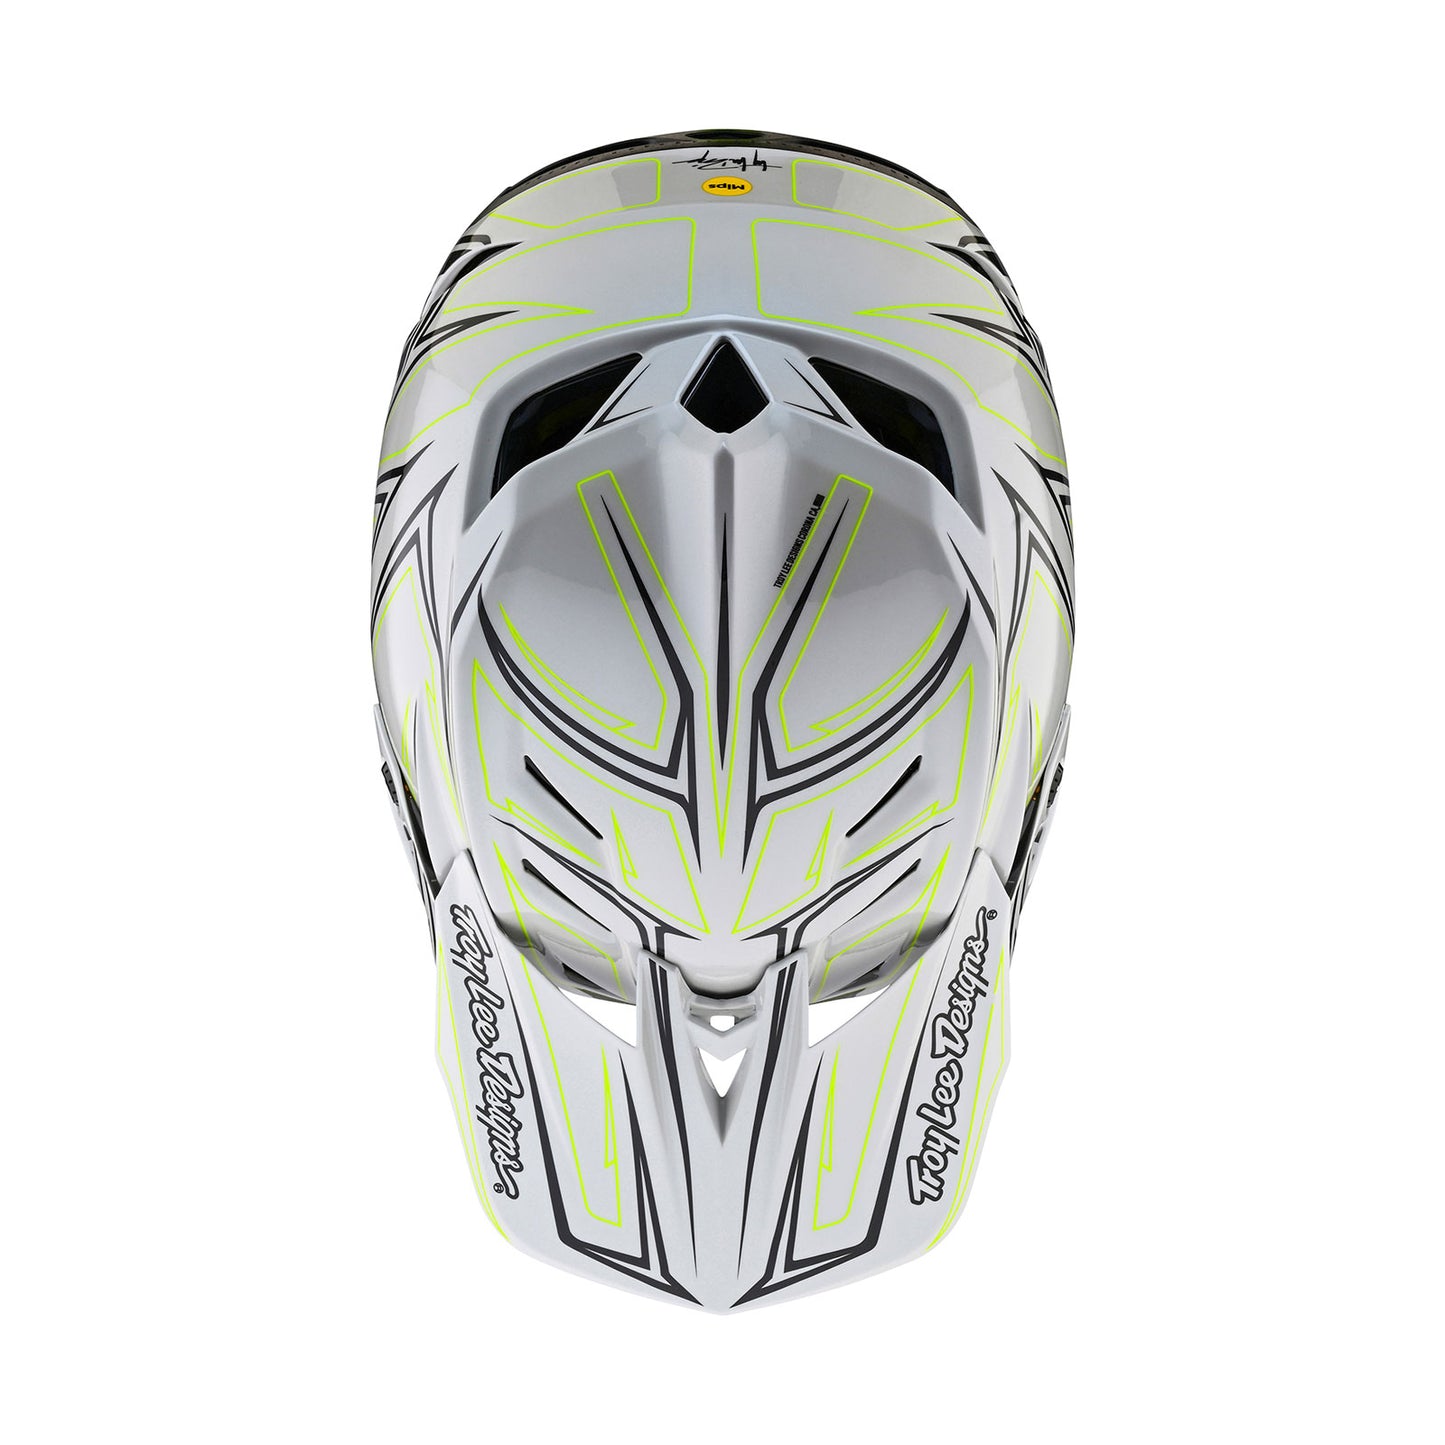 D4 Composite Helmet Pinned Light Gray